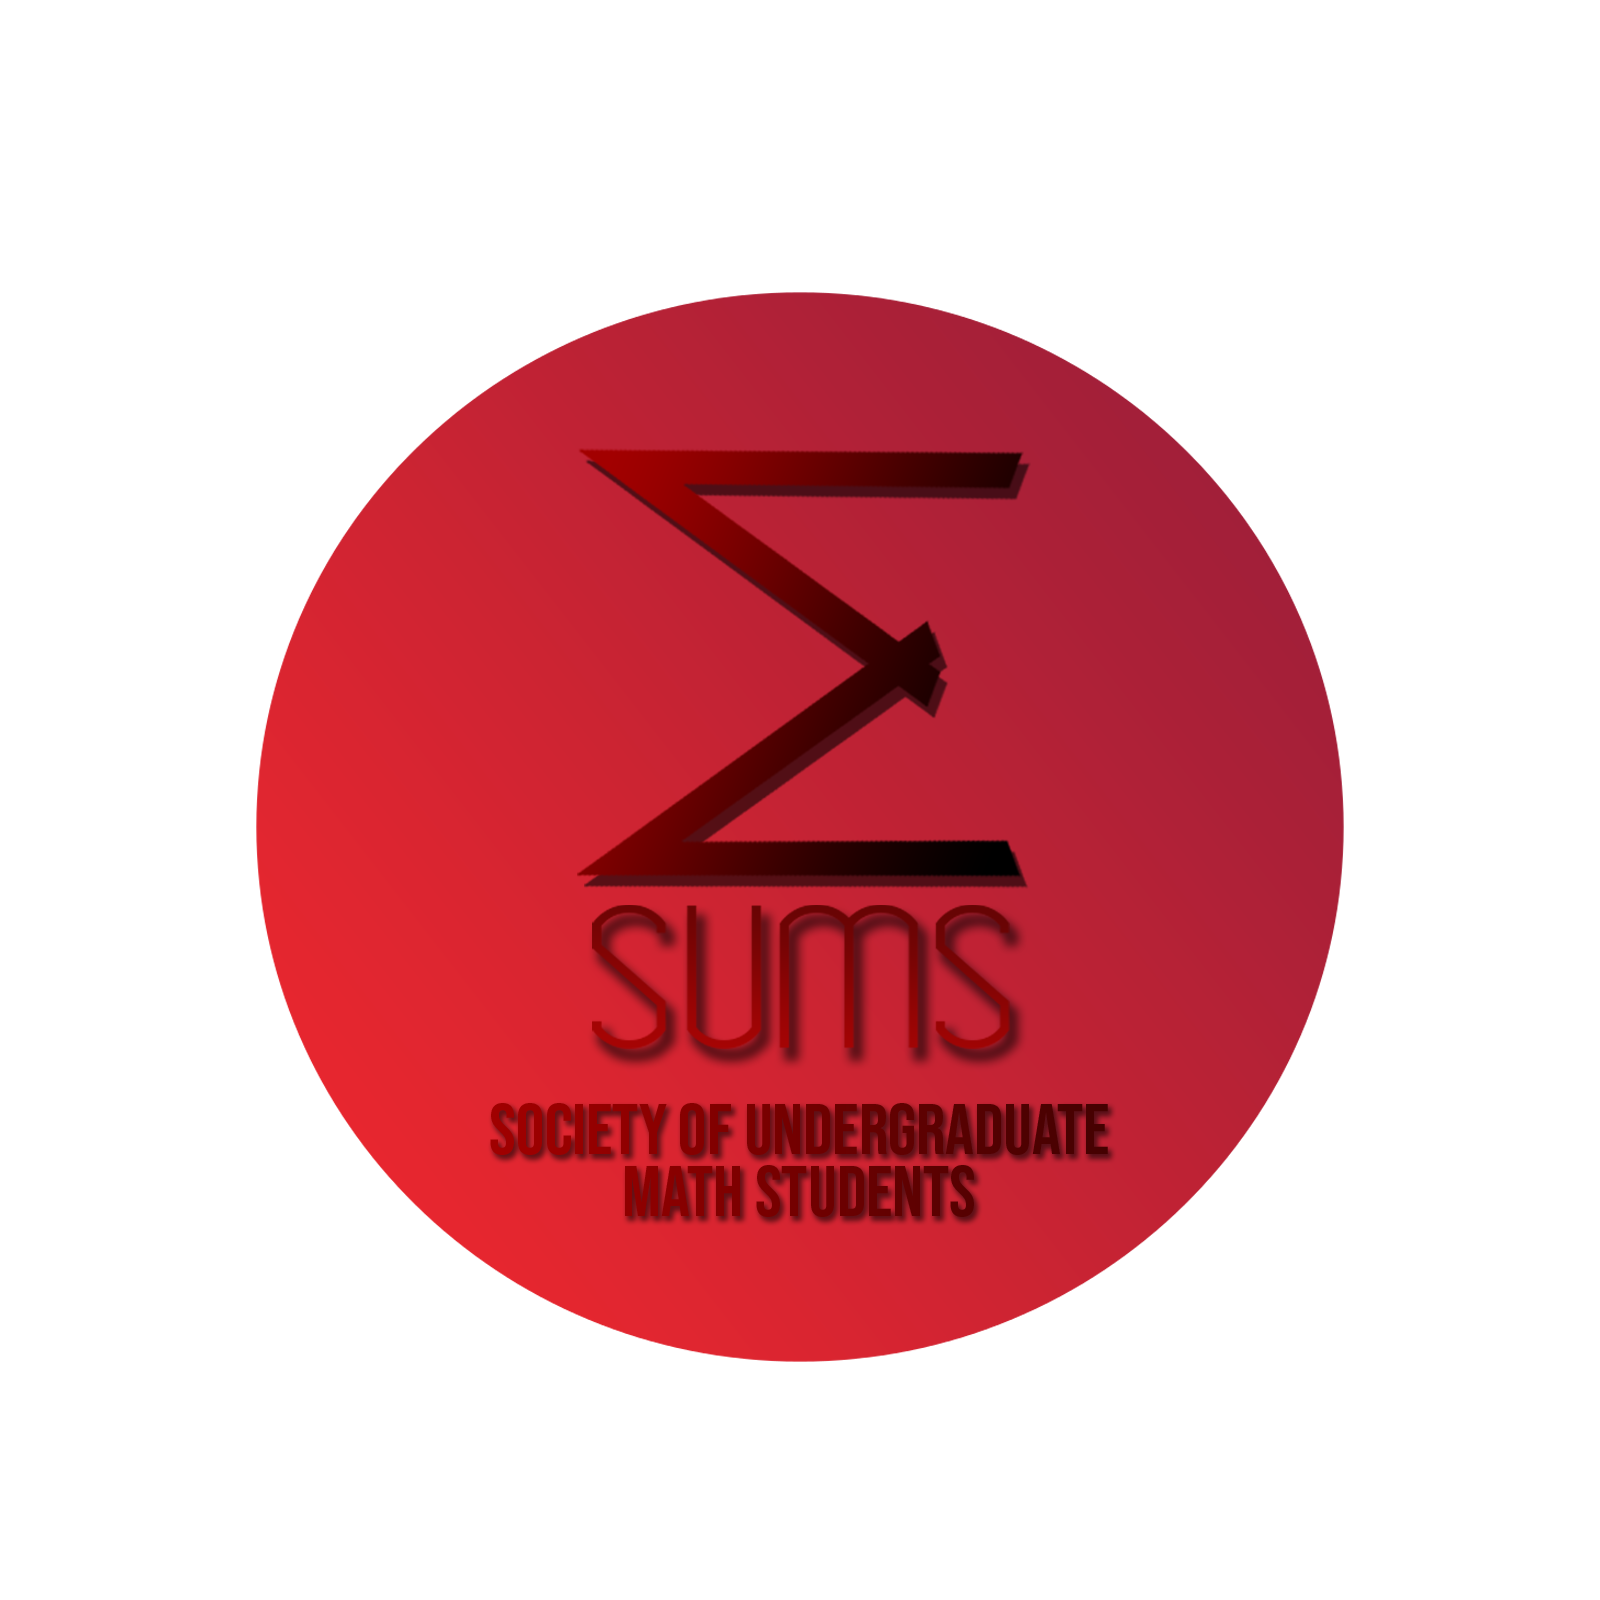 SUMS logo created by Eben Bellas